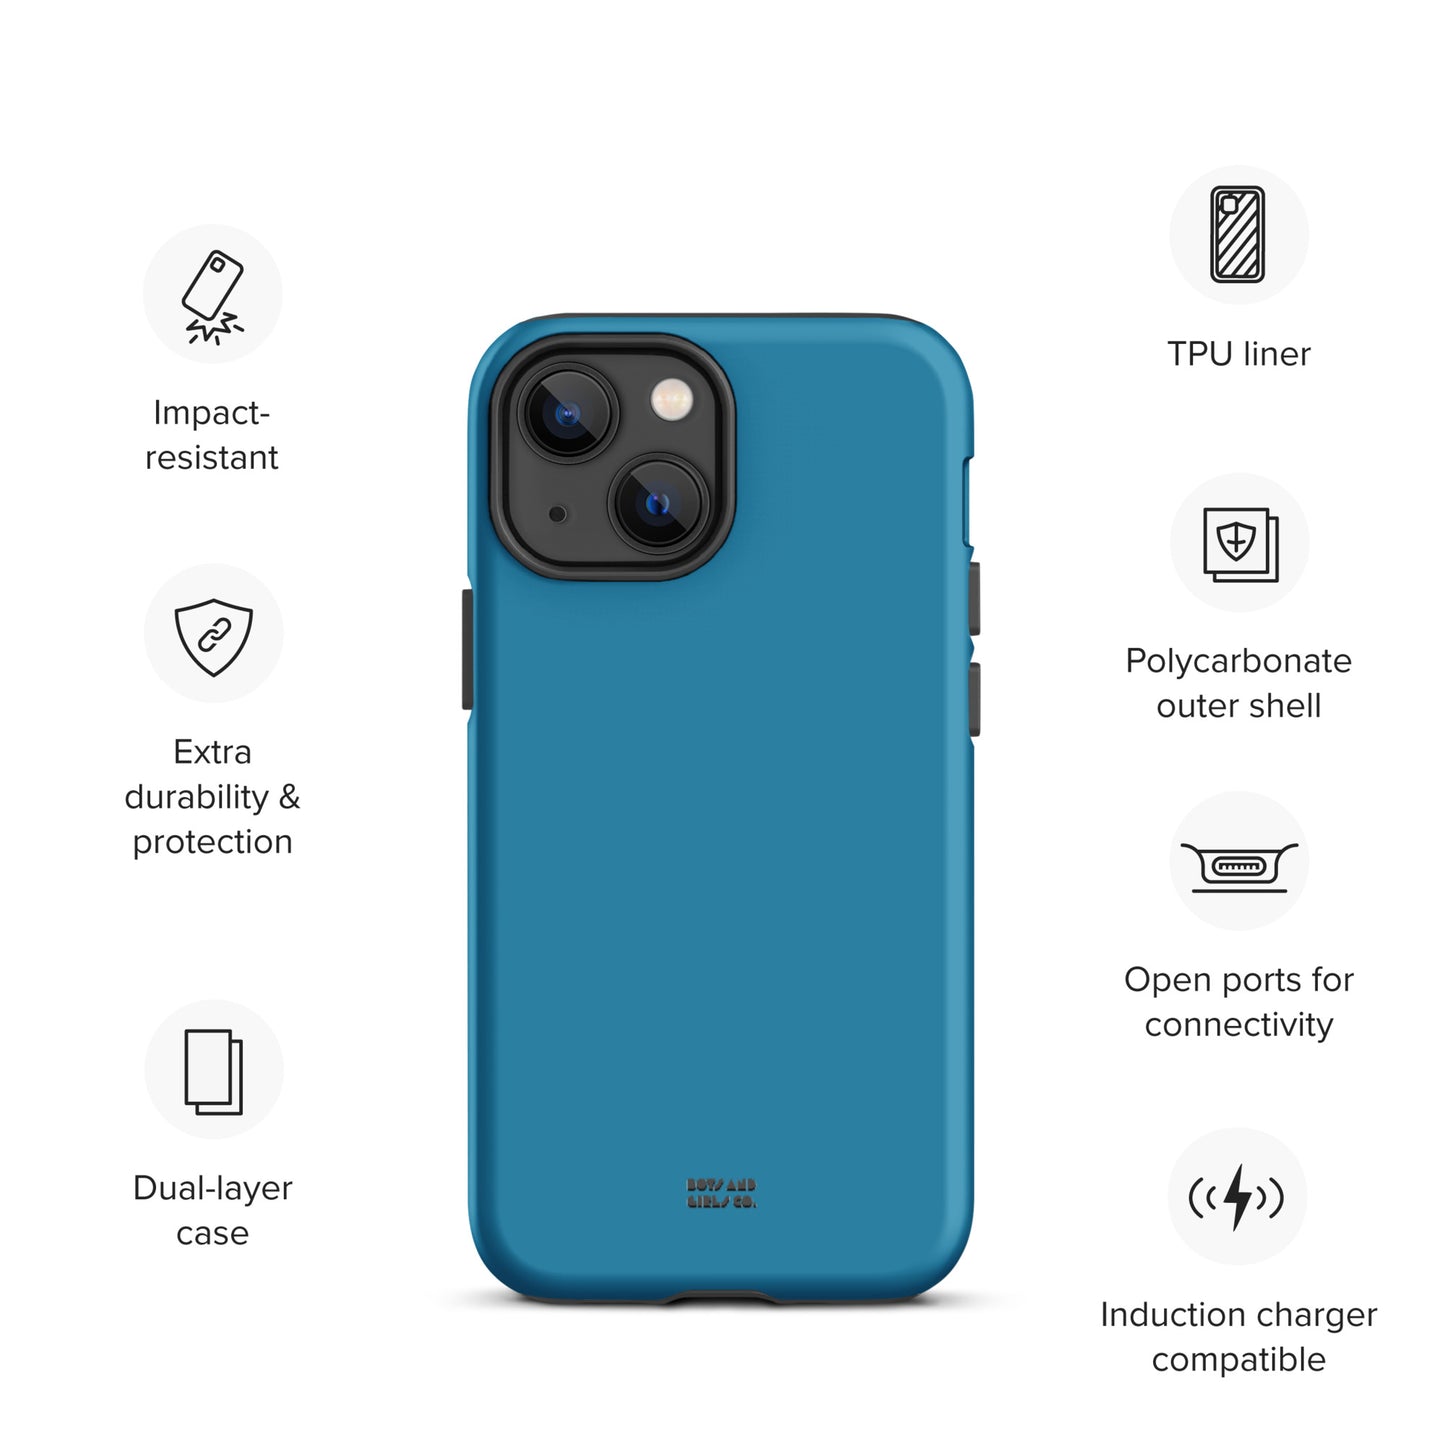 SAPPHIRE BLUE - Tough iPhone case